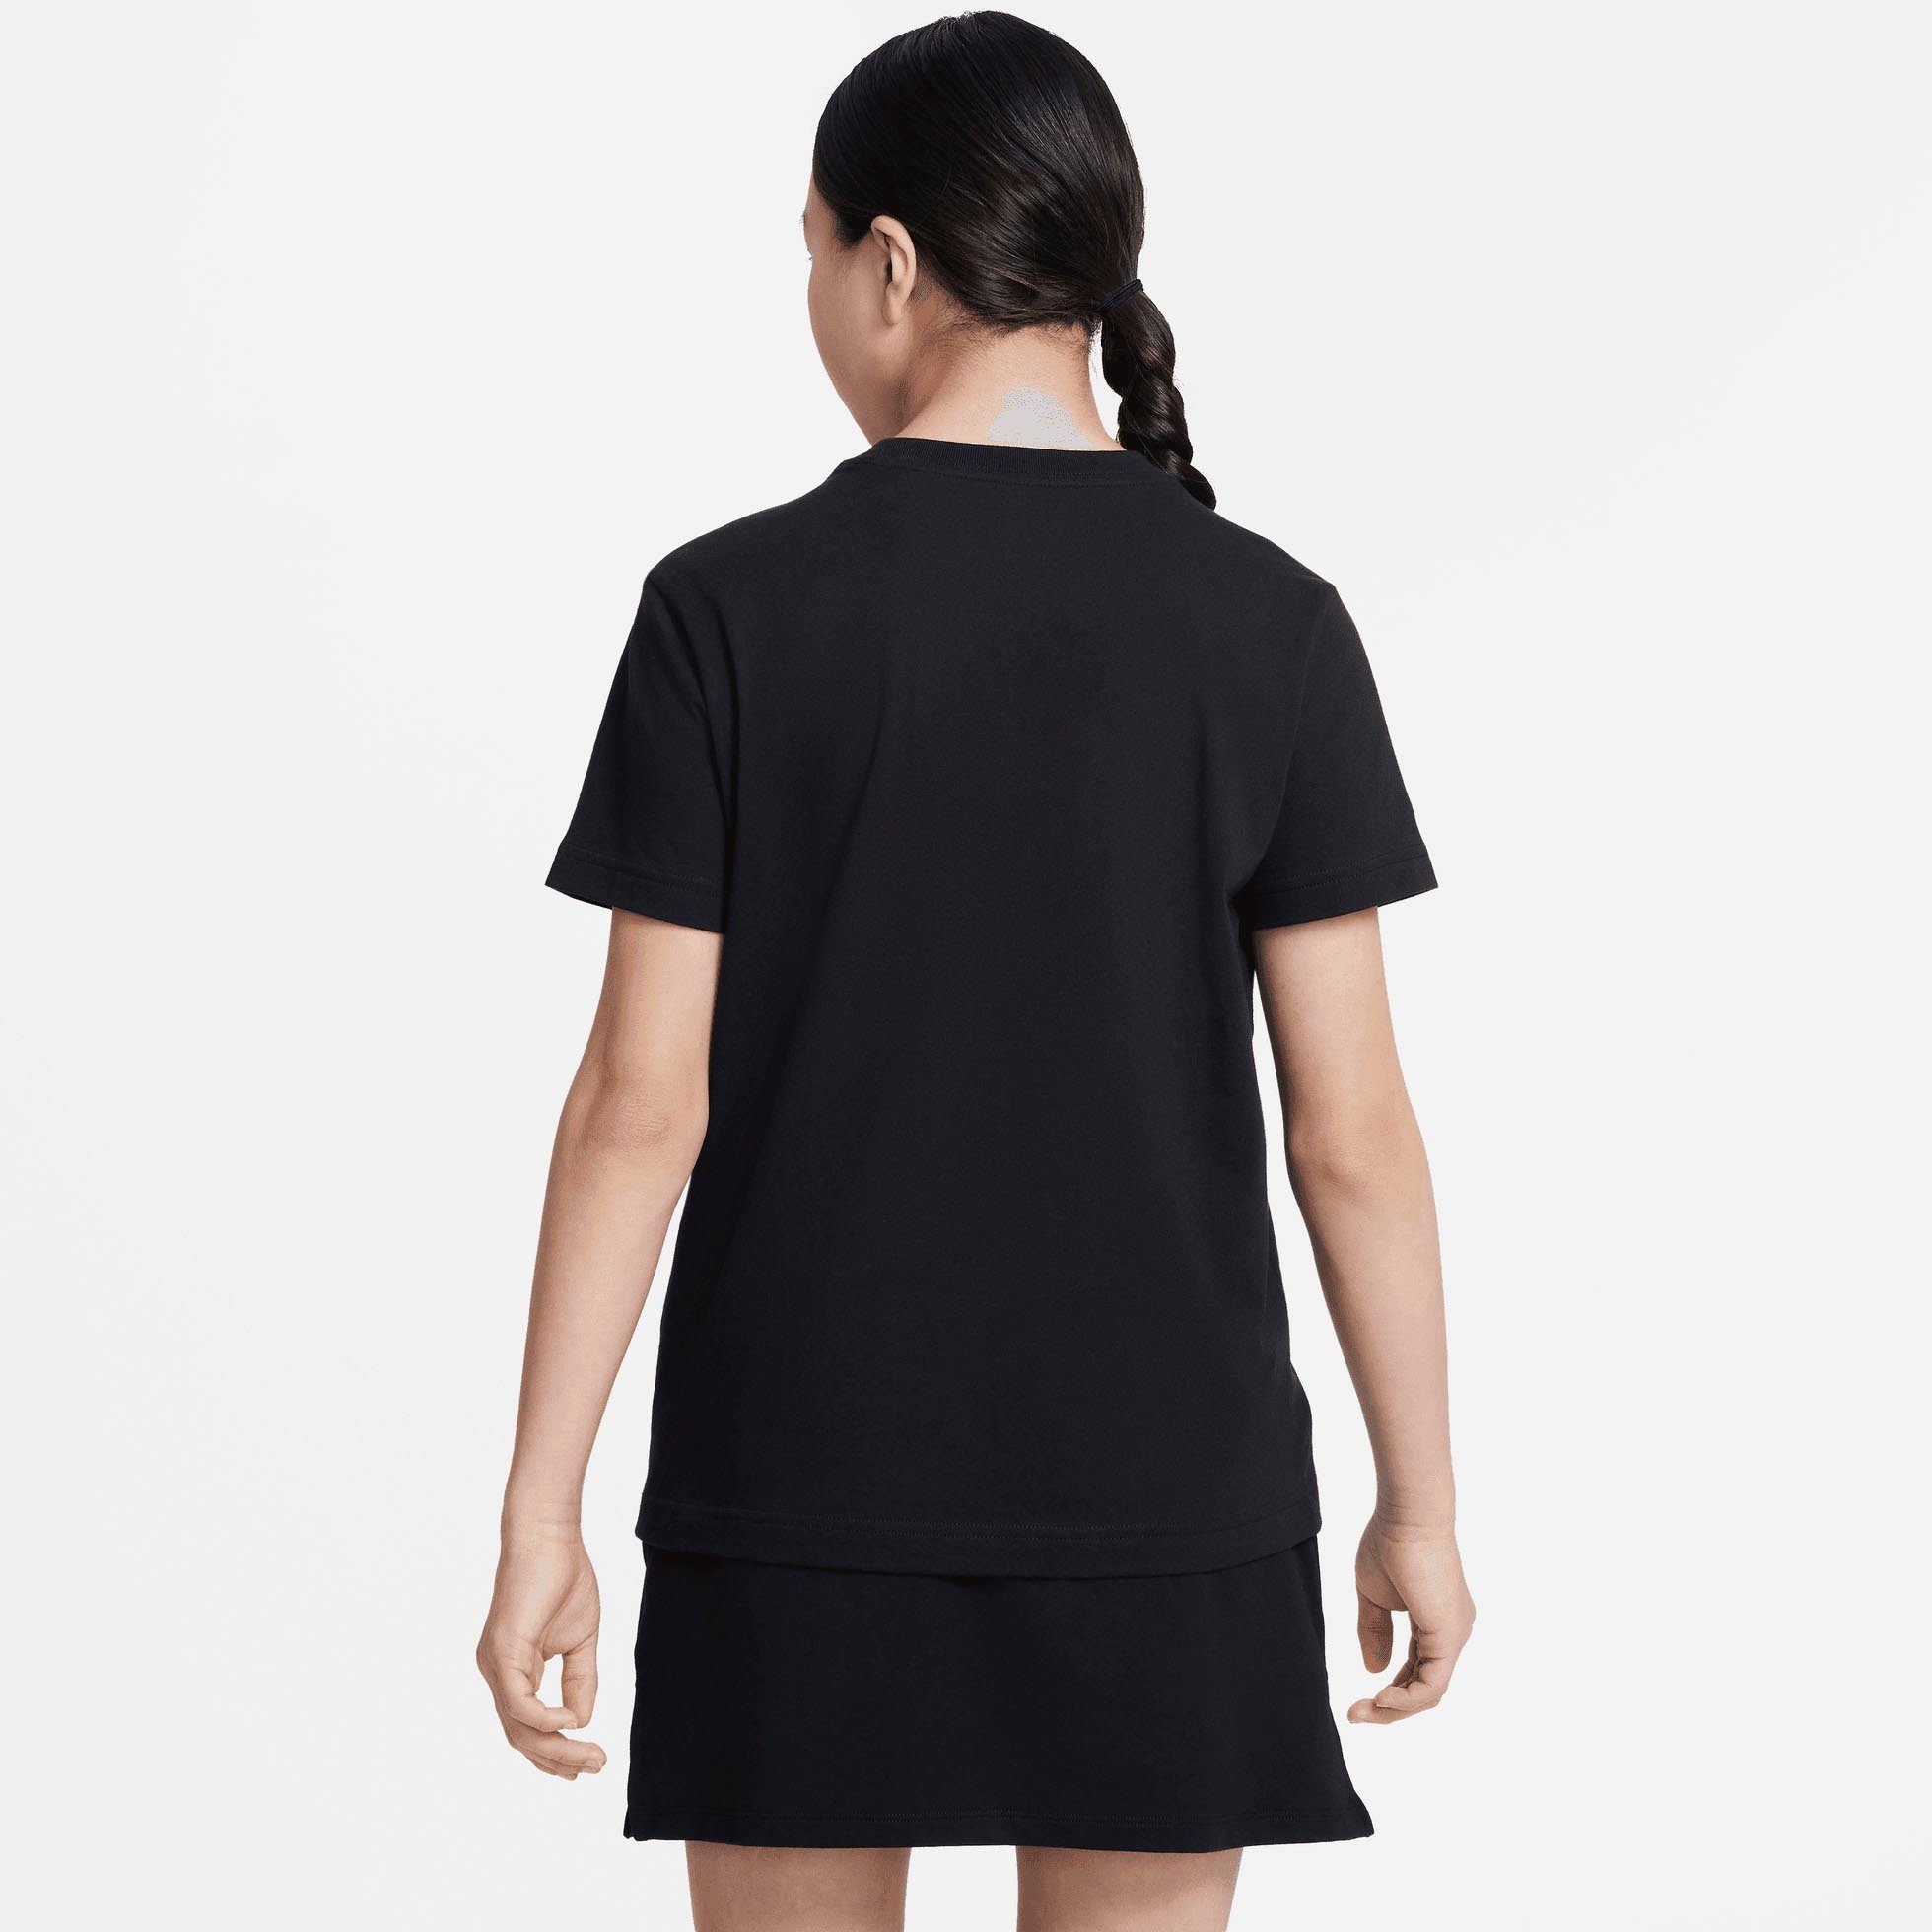 Nike T-Shirt T-SHIRT (GIRLS) Sportswear schwarz KIDS' BIG